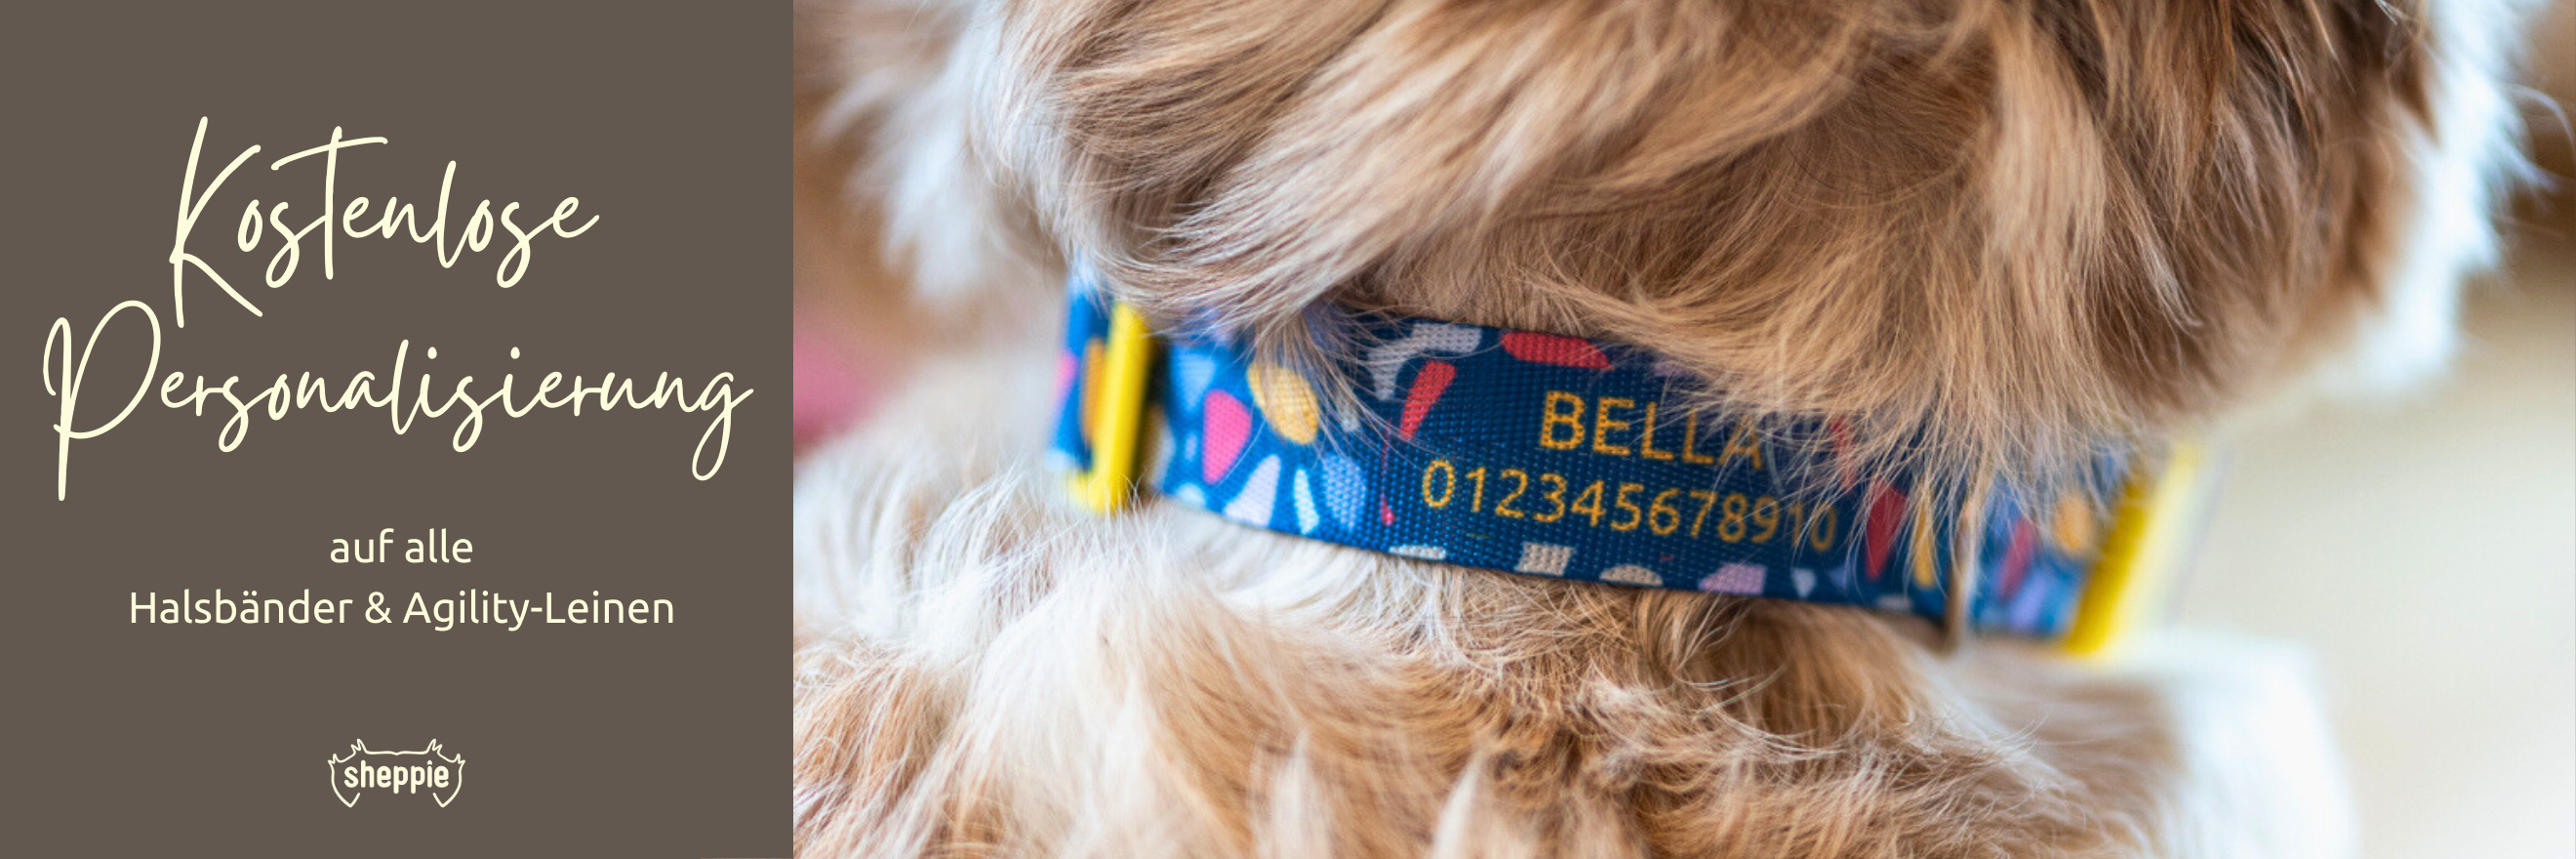 Handgefertigte Hundehalsbänder und Hundeleinen mit kostenloser Personalisierung mit Name und Telefonnummer